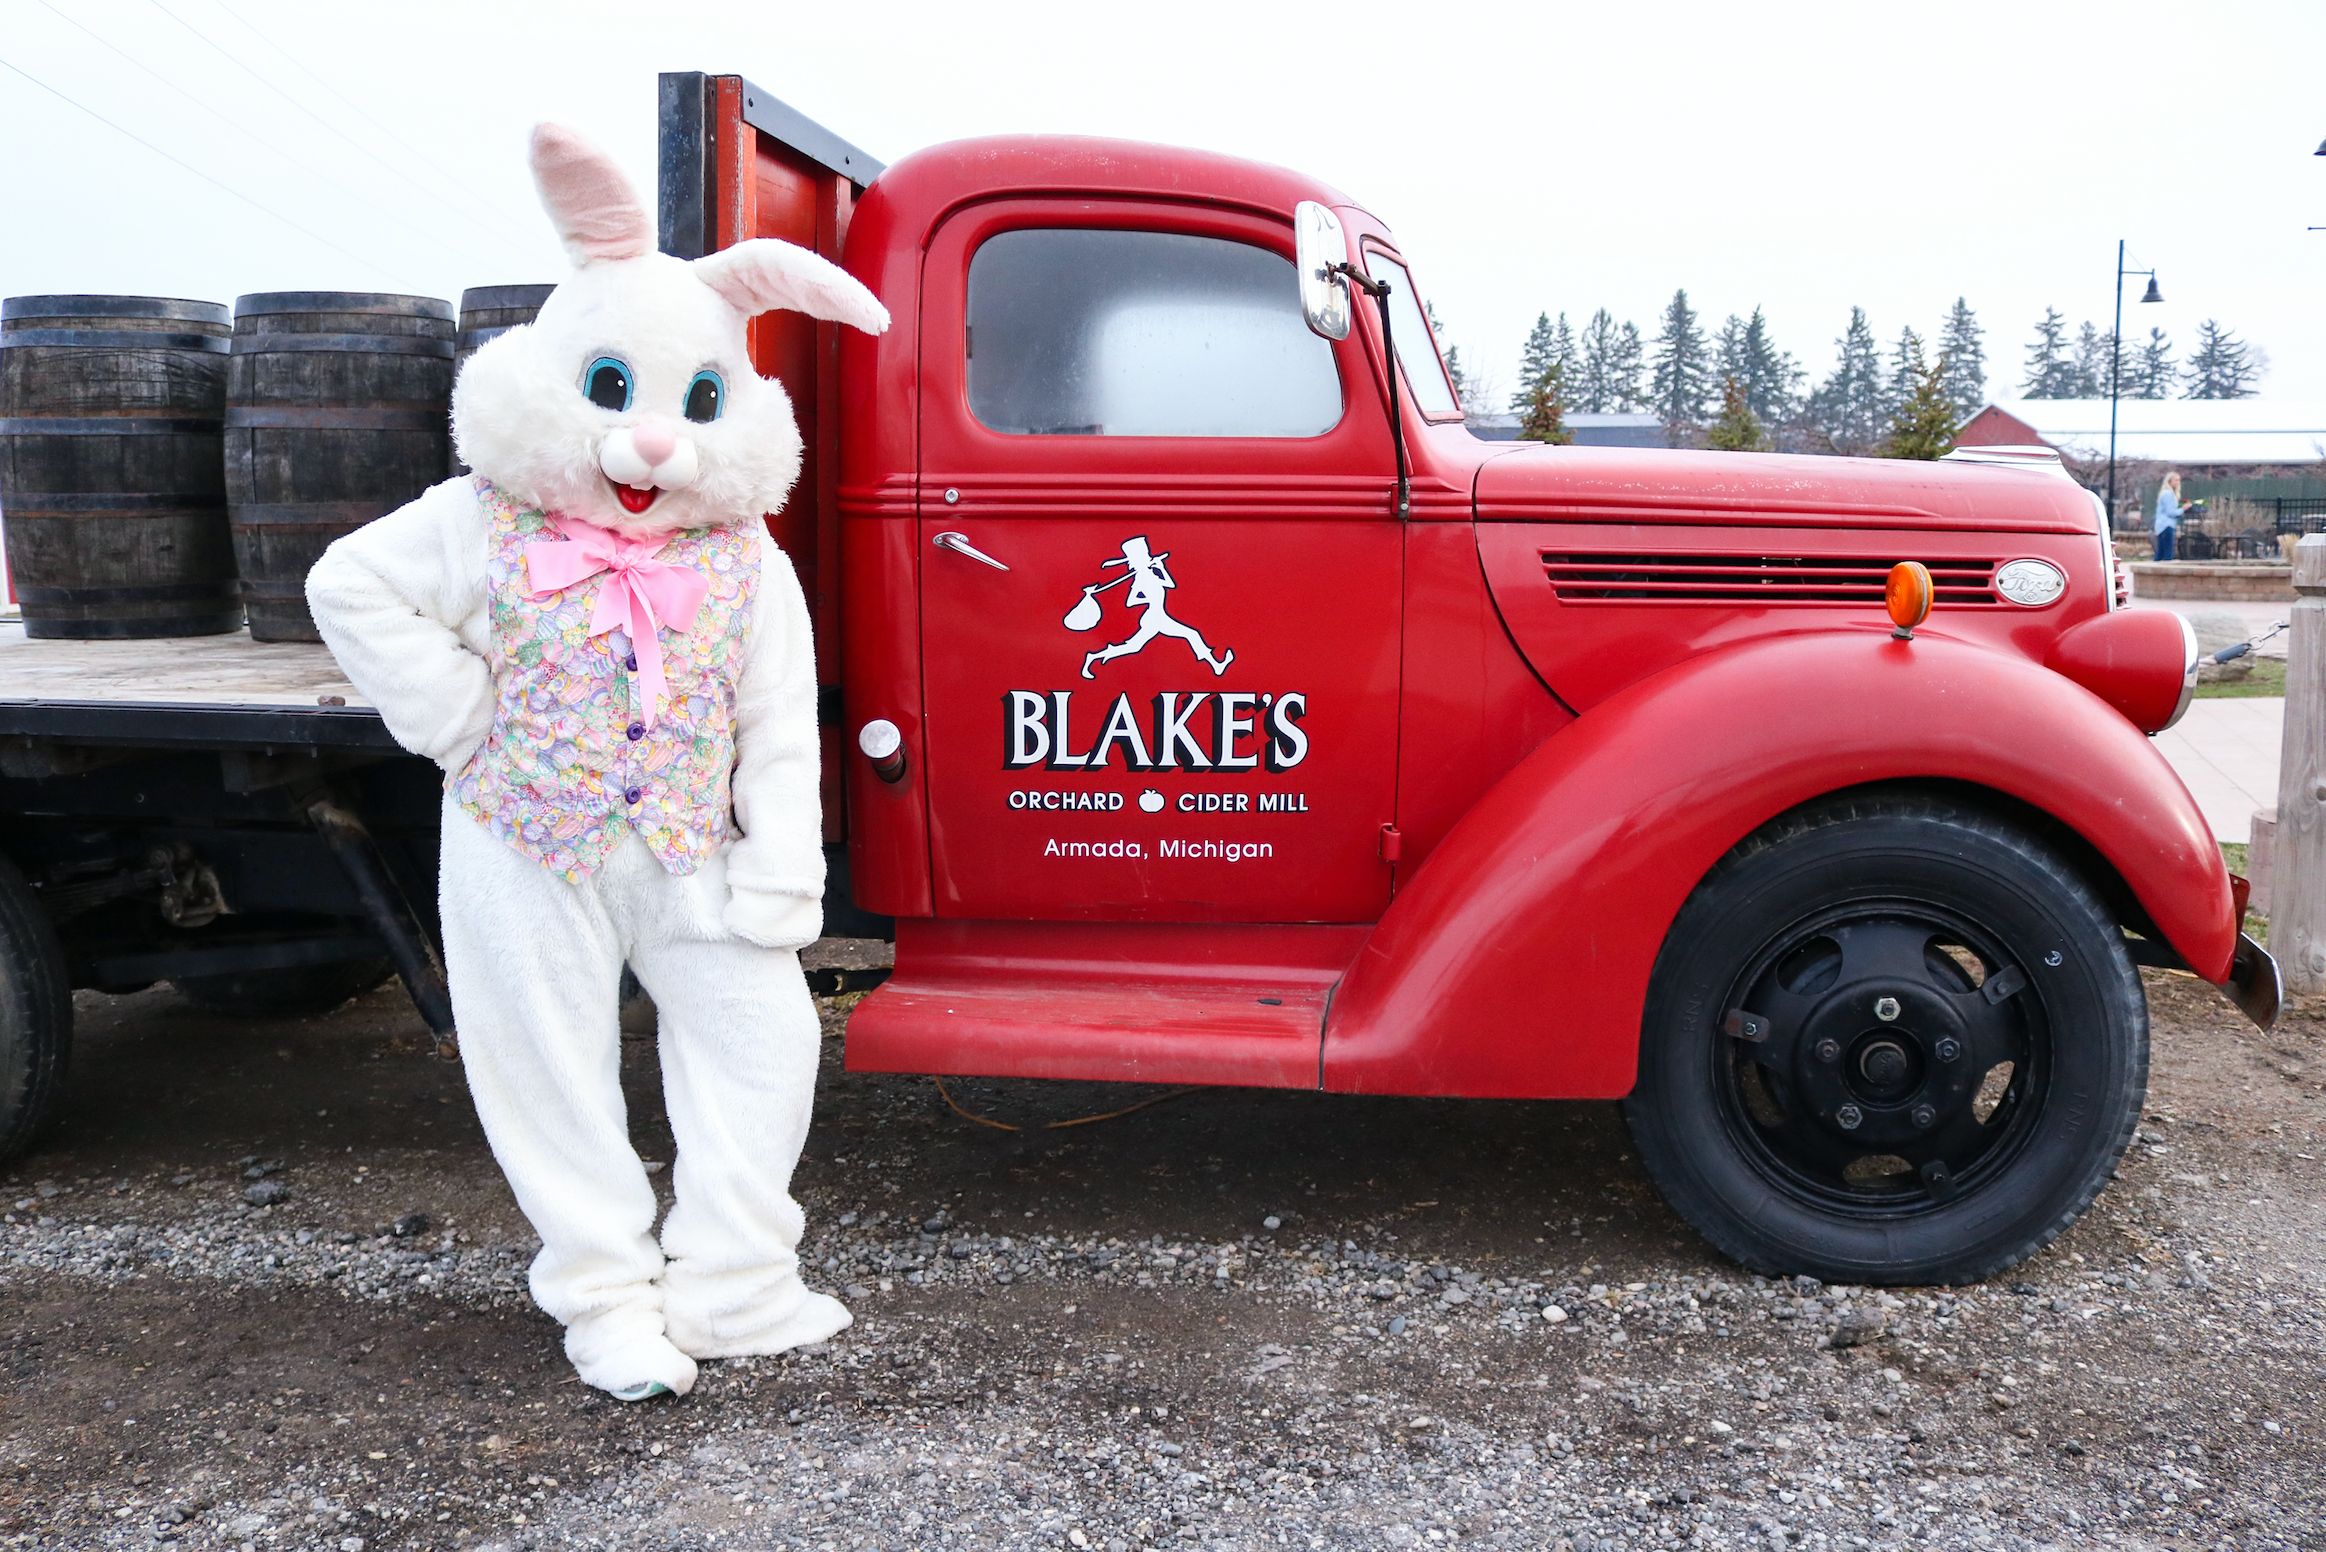 https://blakefarms.com/event/easter-egg-hunt-bunny-photos/